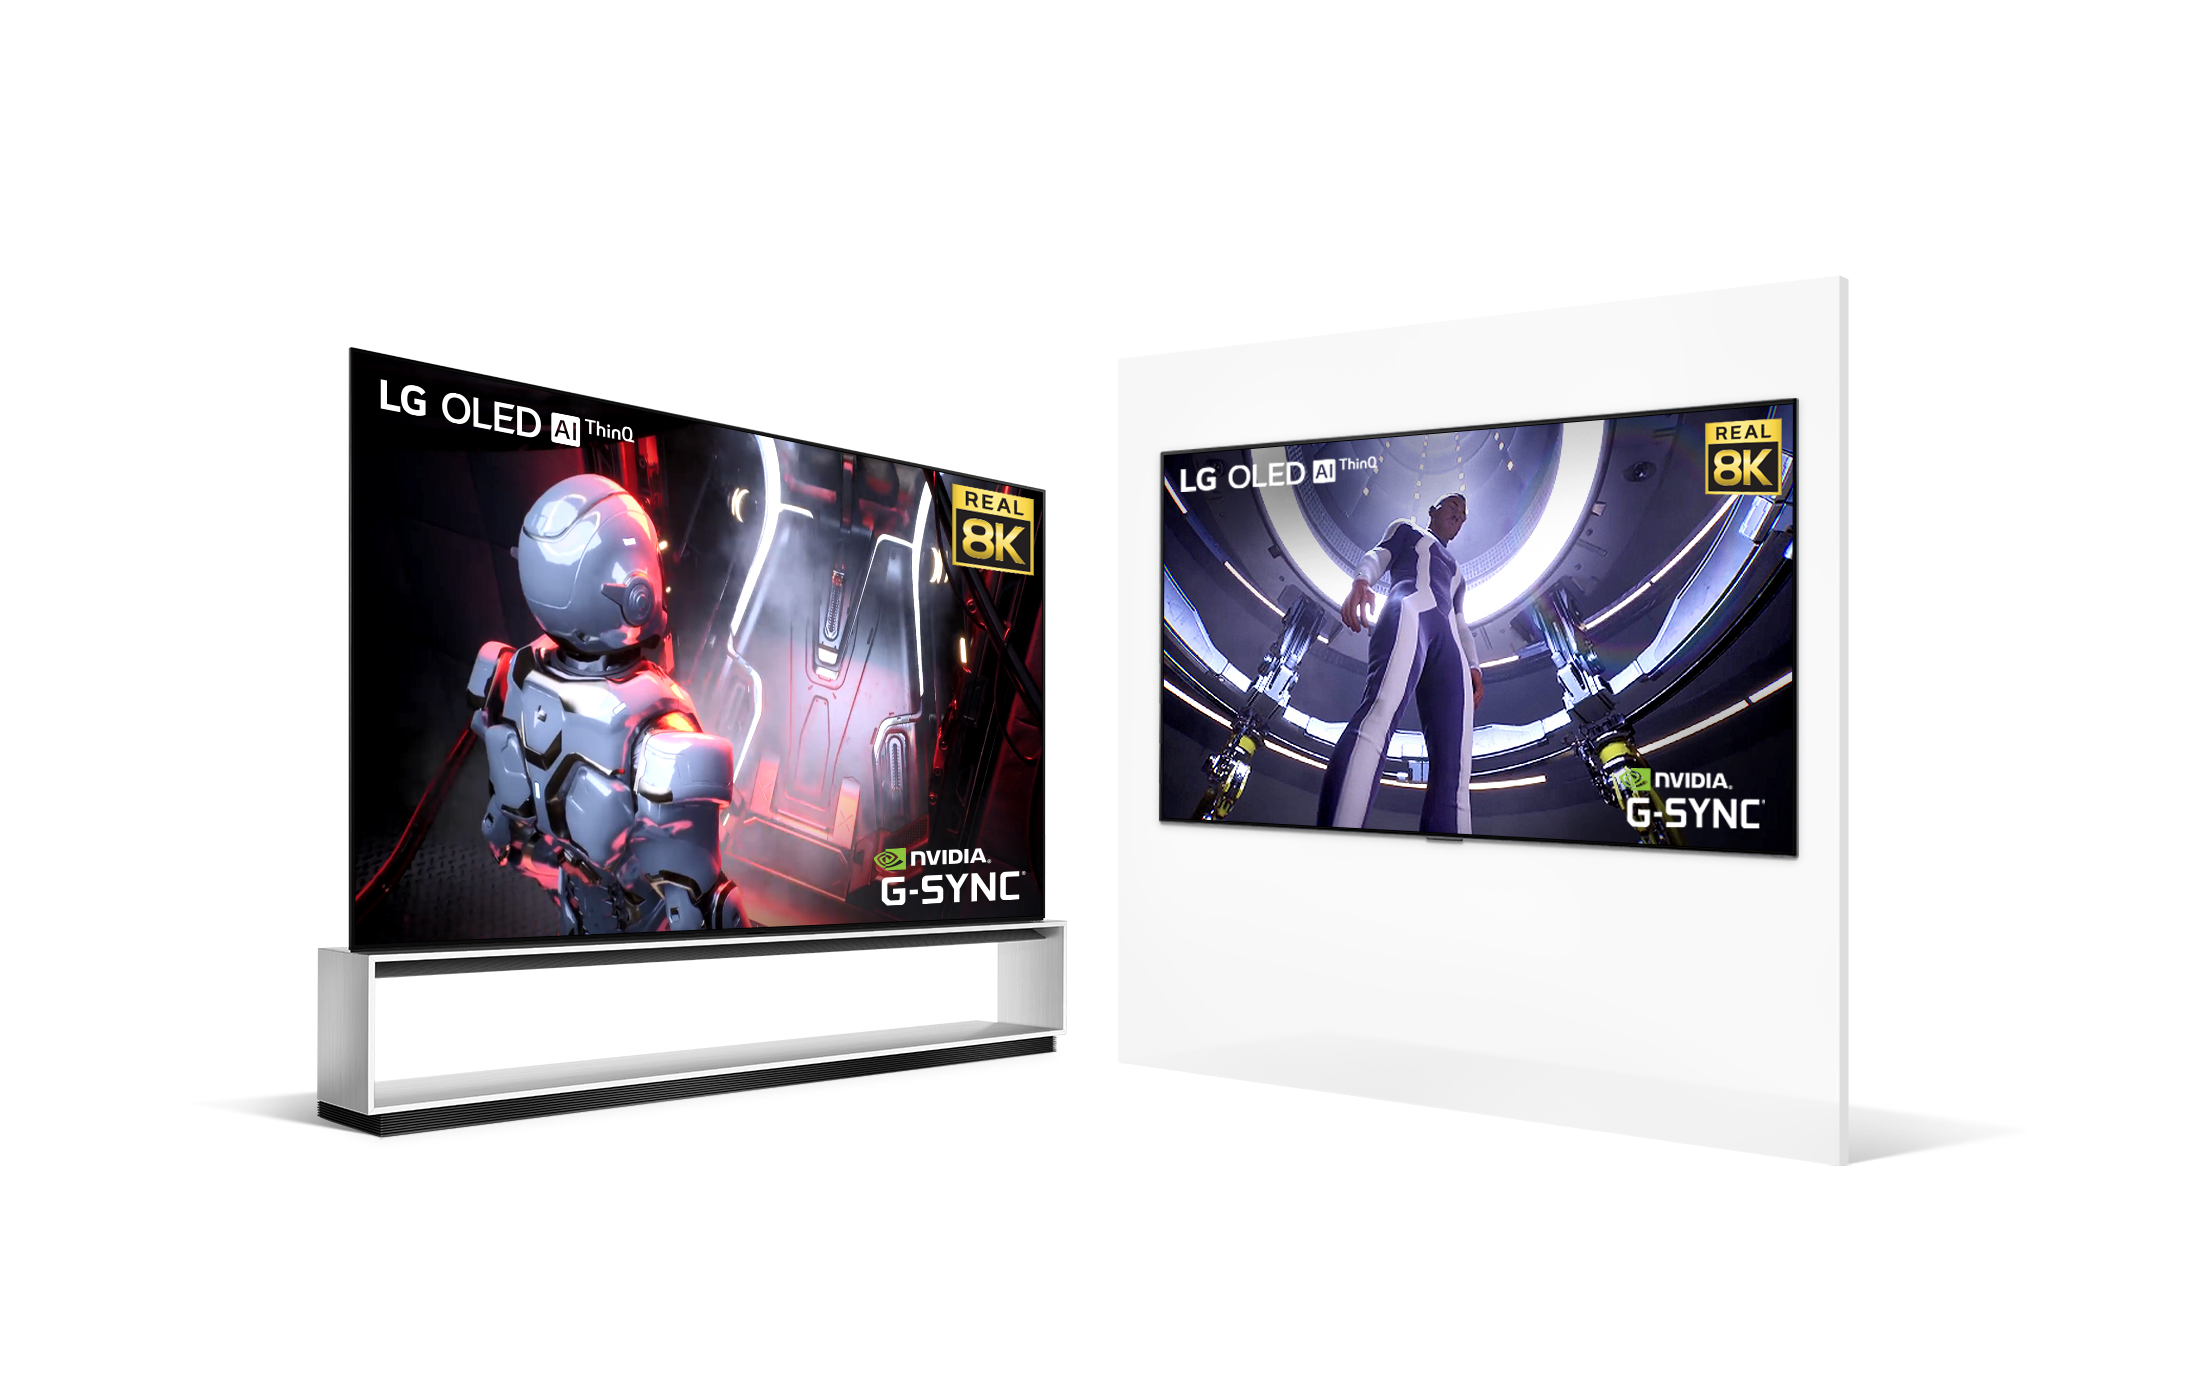 Los televisores OLED 8K de LG llevan el entretenimiento para PC a otro nivel con capacidad de juego más avanzada